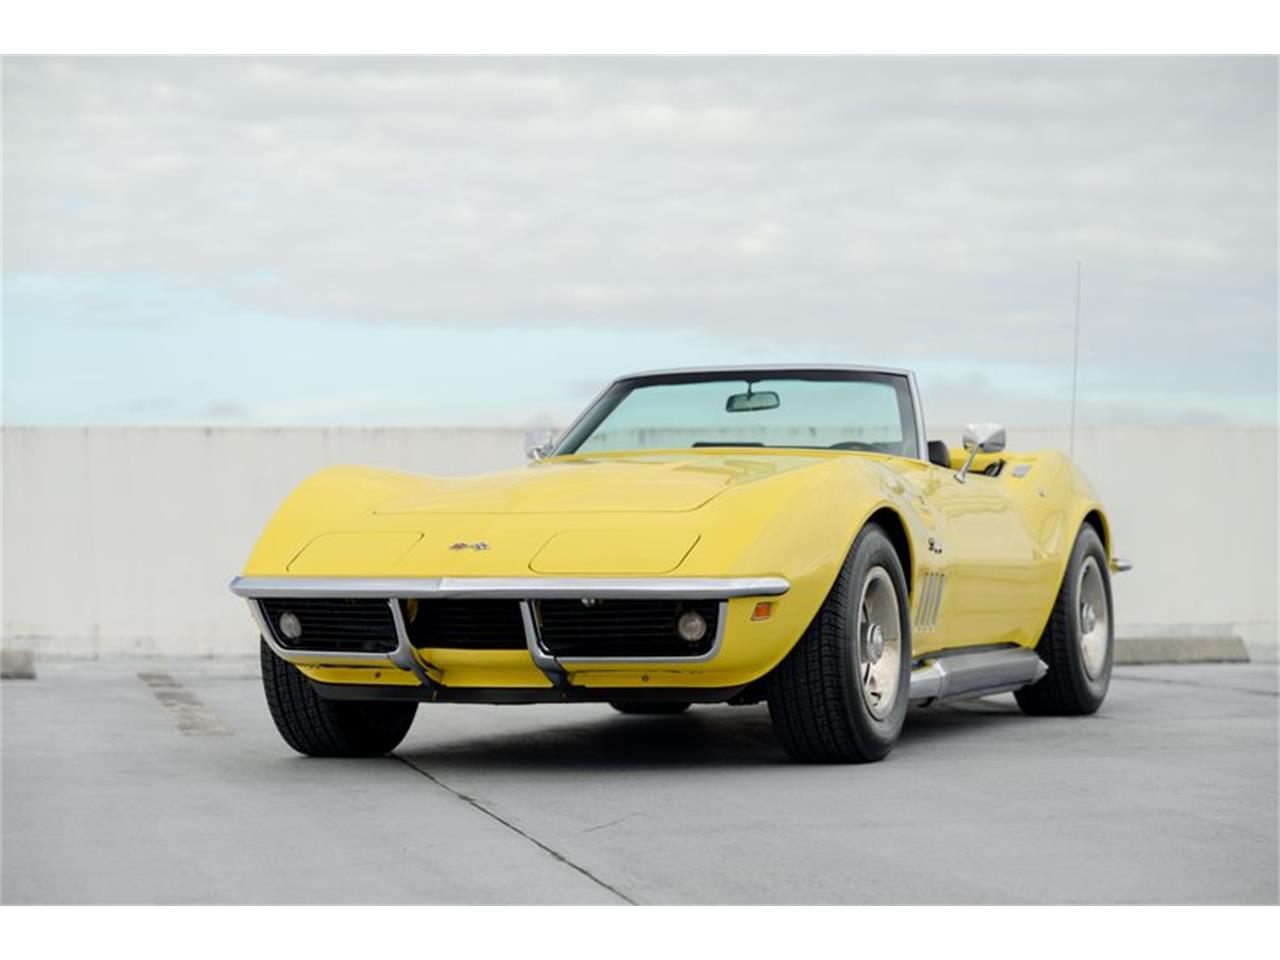 For Sale: 1969 Chevrolet Corvette in Ft. Lauderdale, Florida for sale in Fort Lauderdale, FL